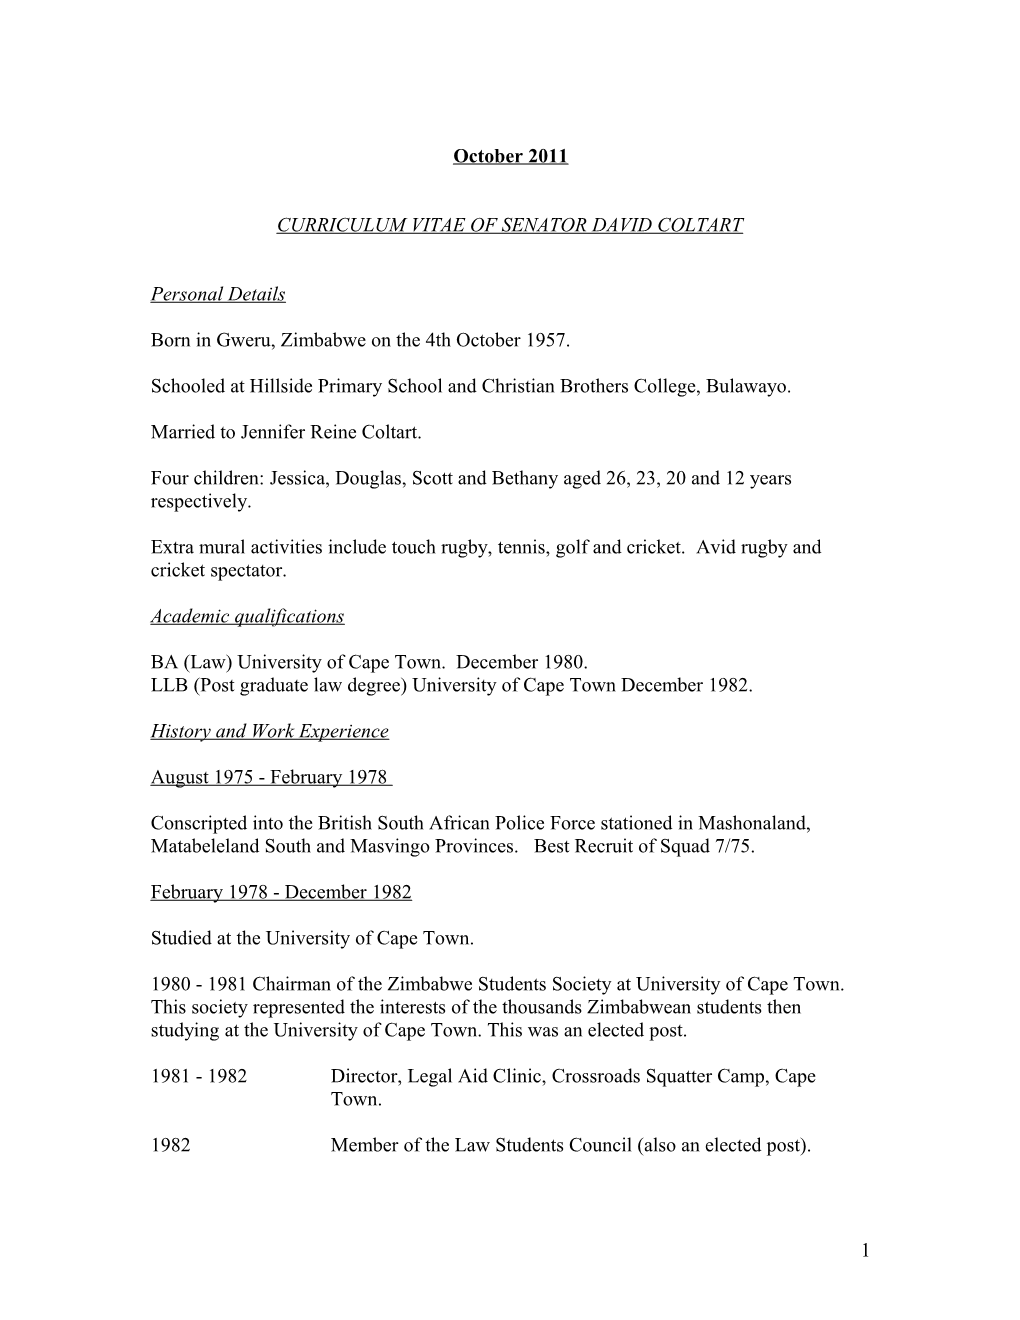 Curriculum Vitae of Senator David Coltart